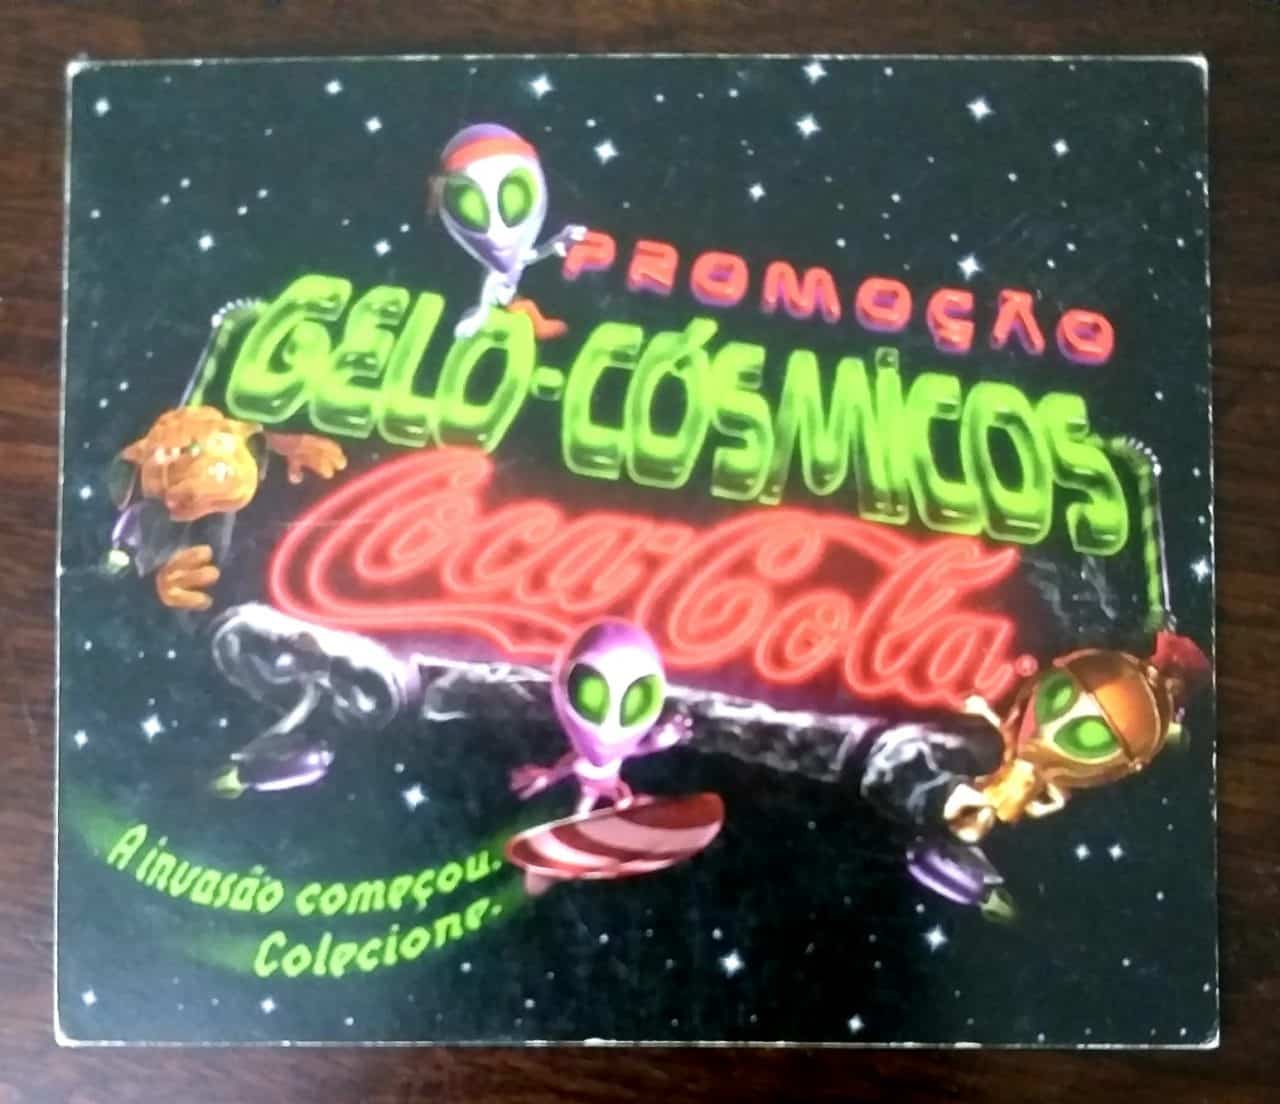 Gelo-Cósmicos Coca Cola Cards Coleção Completa ano 2000 #Nostalgia